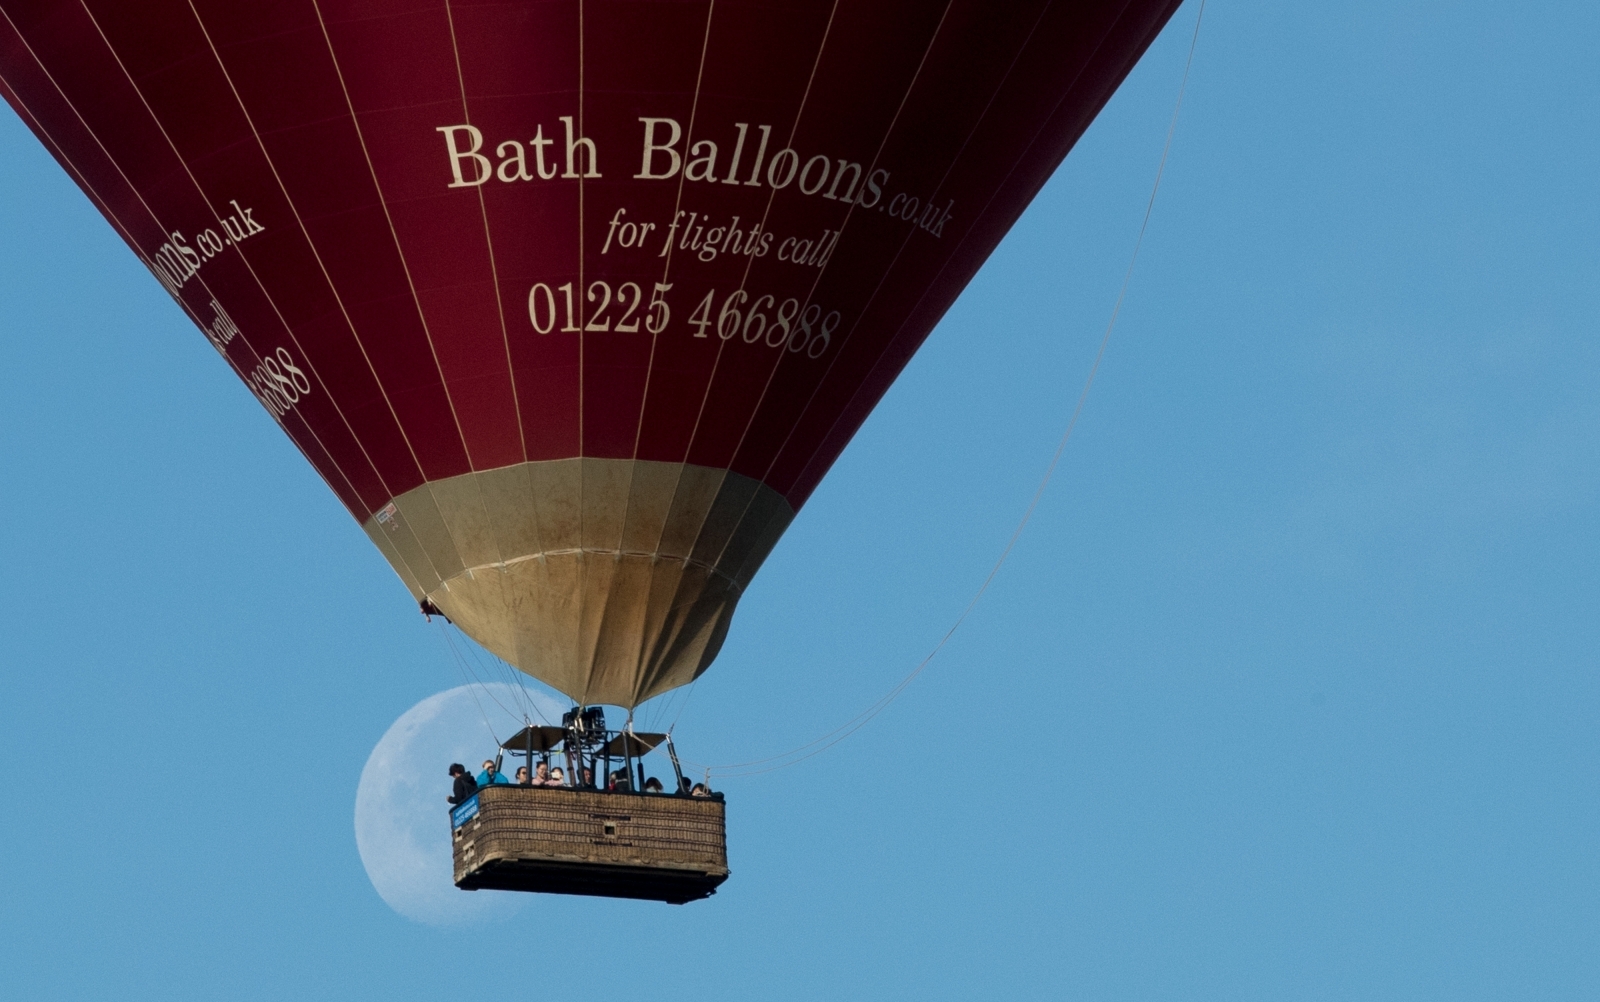 Bristol Balloon Fiesta 2017